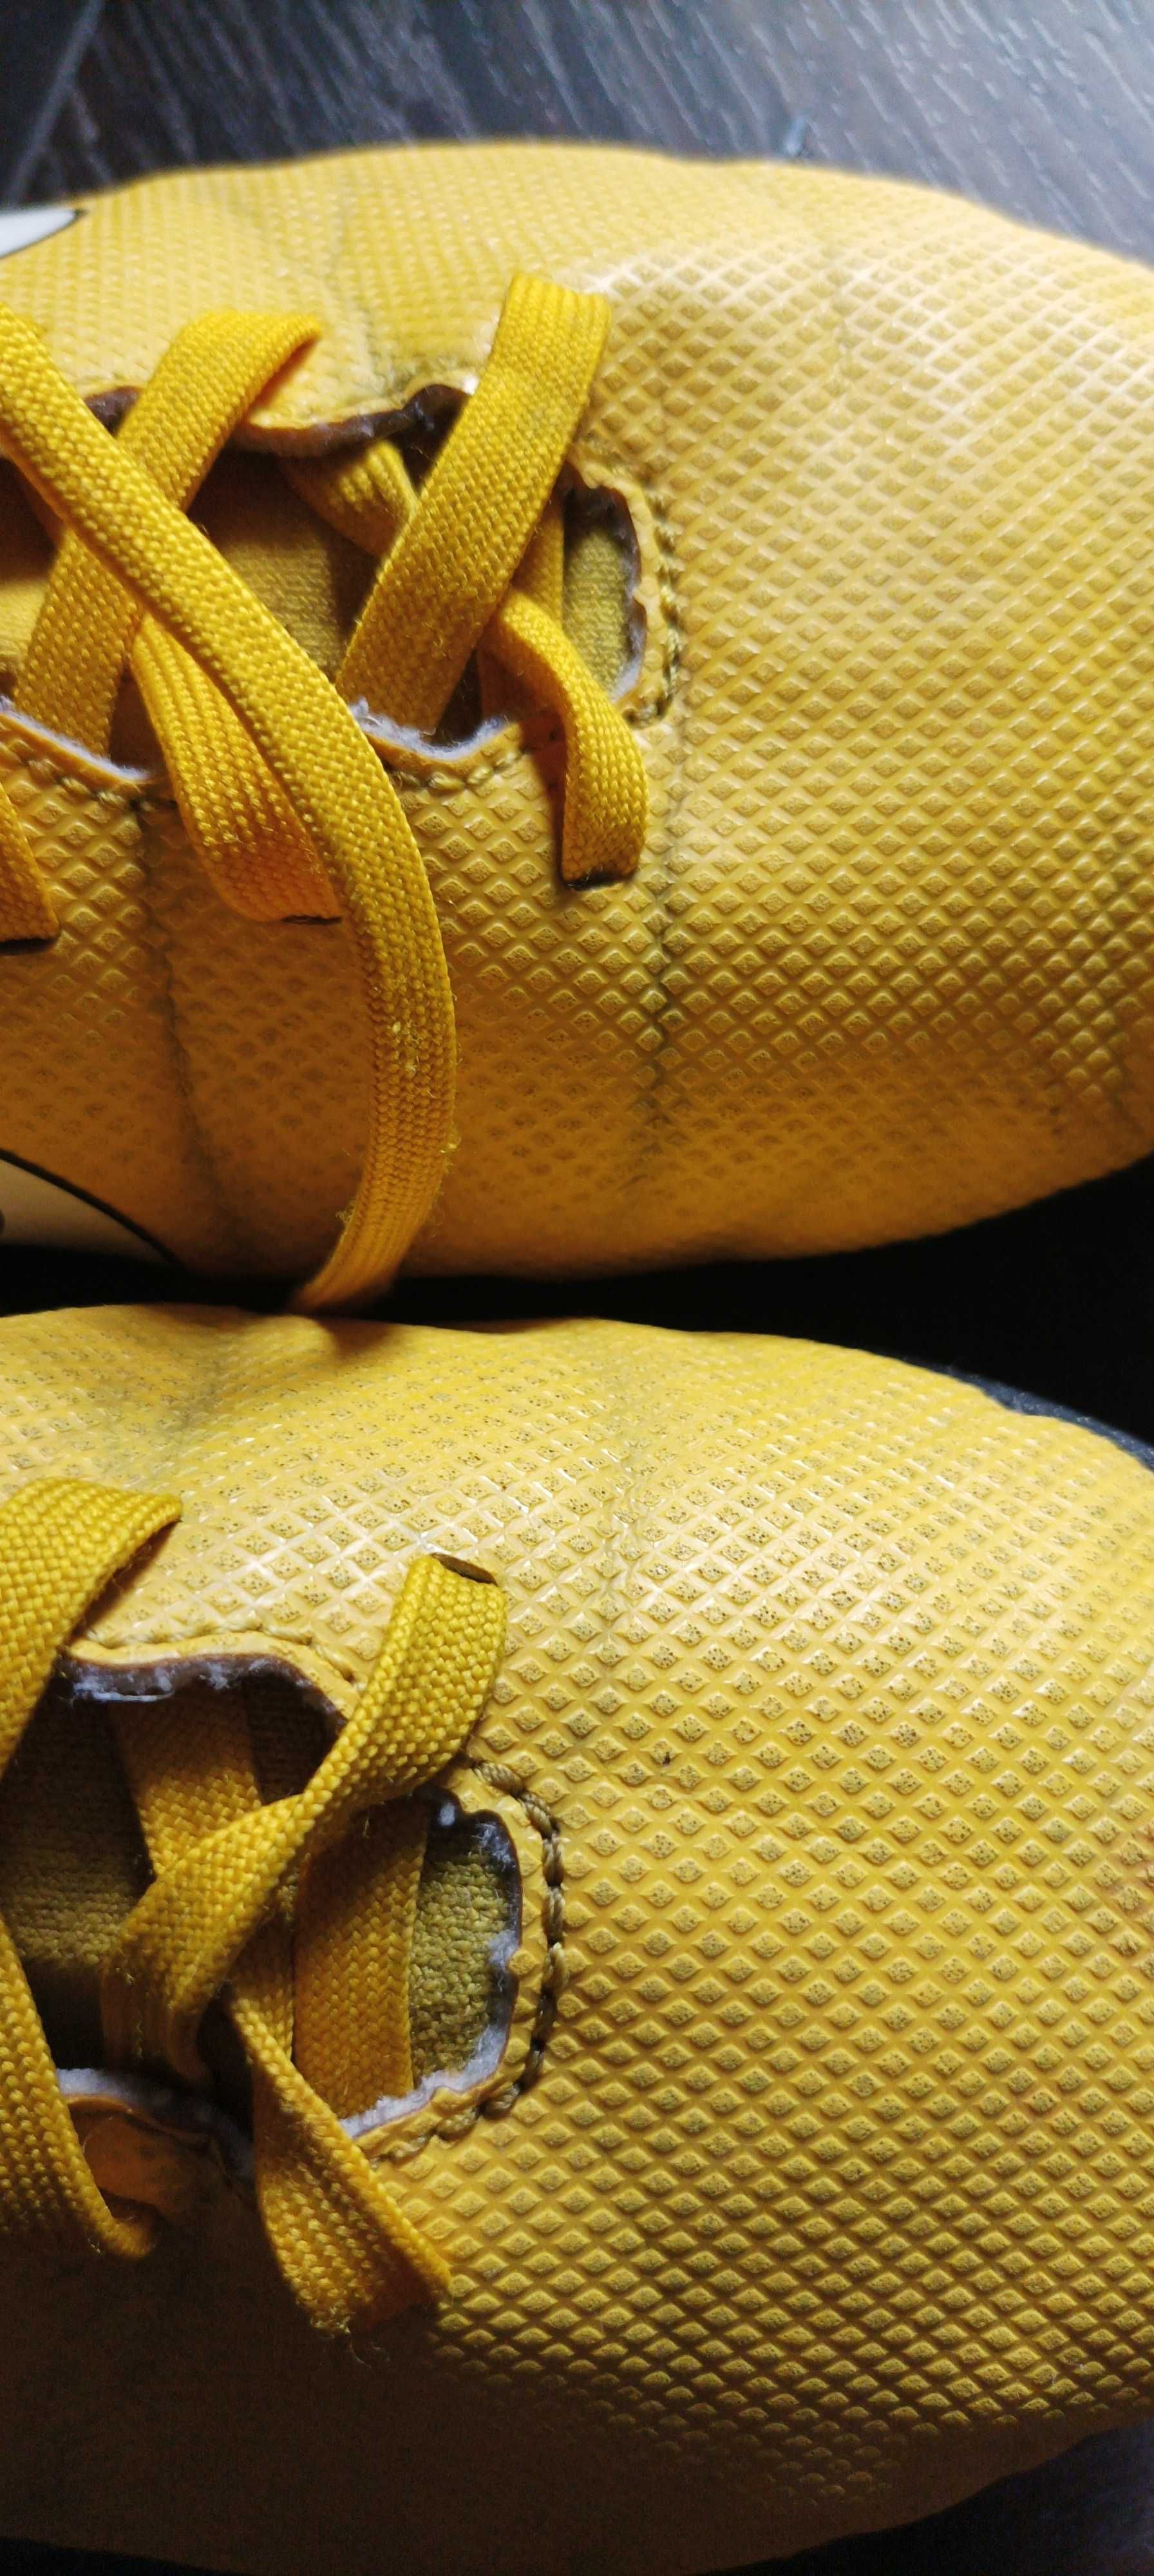 Buty Nike do piłki długość 24 cm